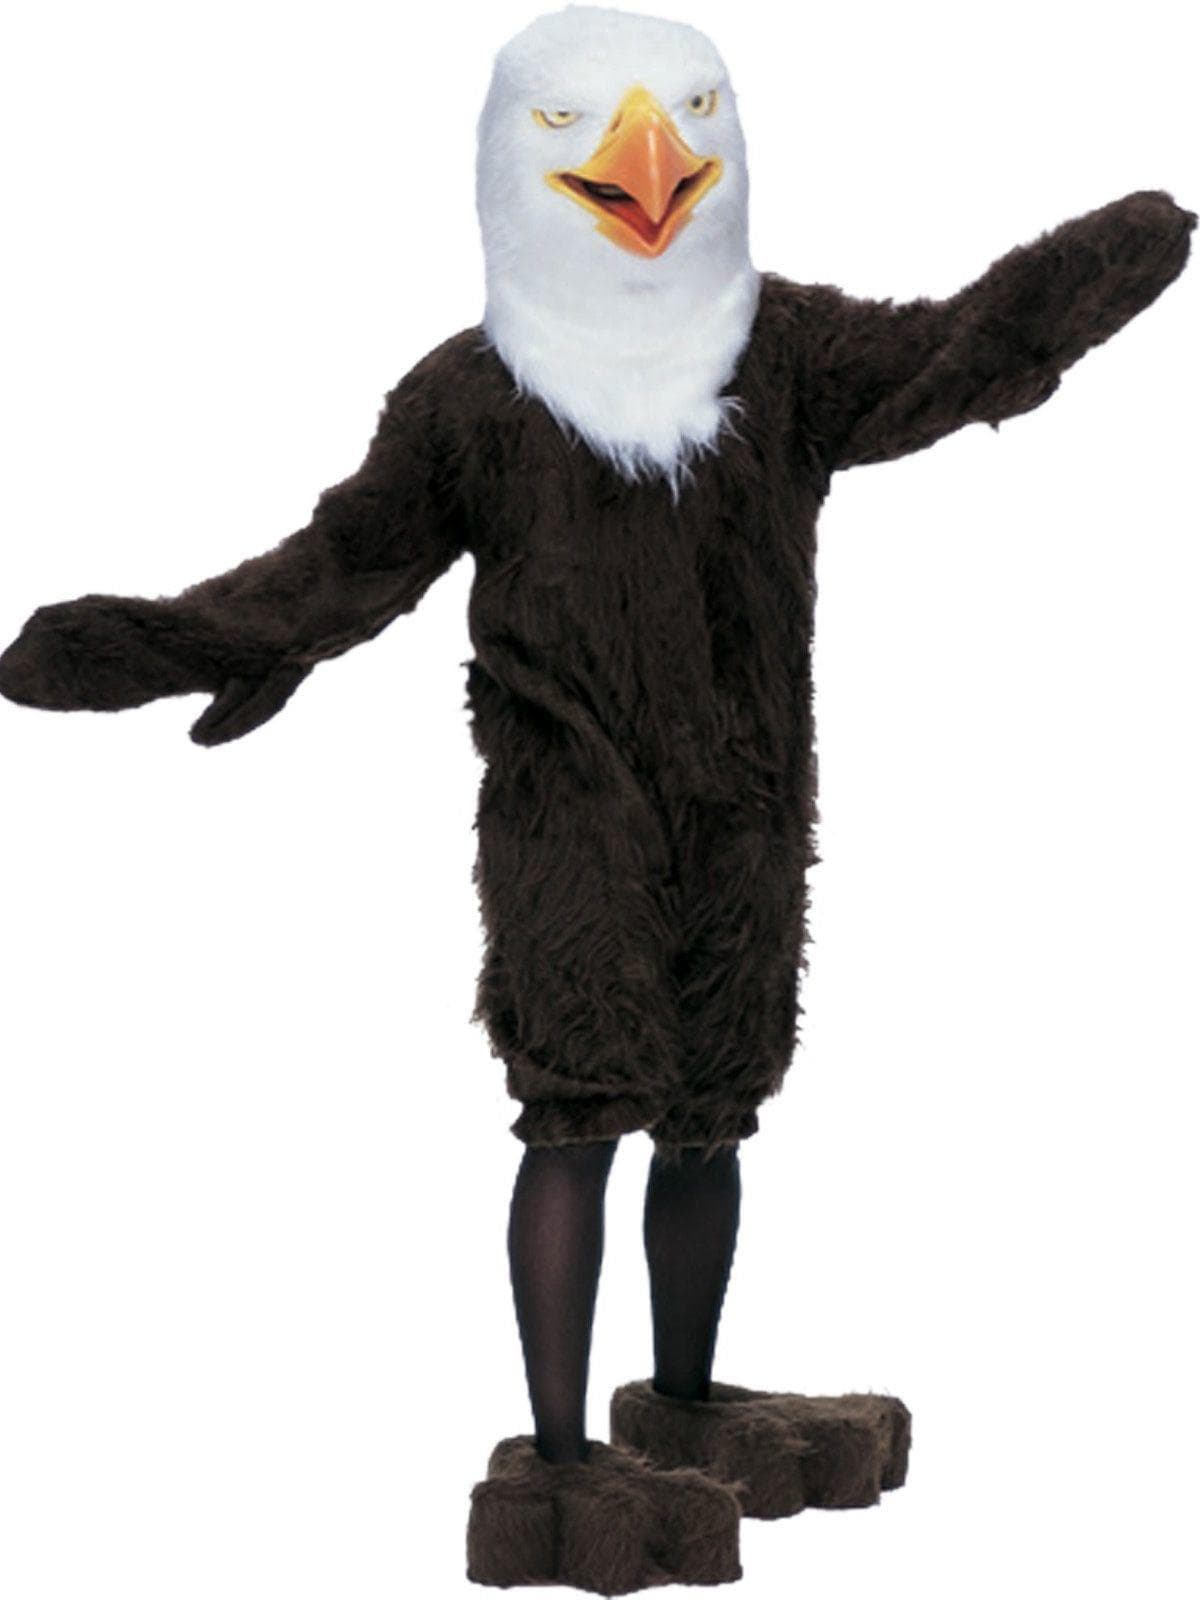 Adult America Eagle Mascot Costume - costumes.com